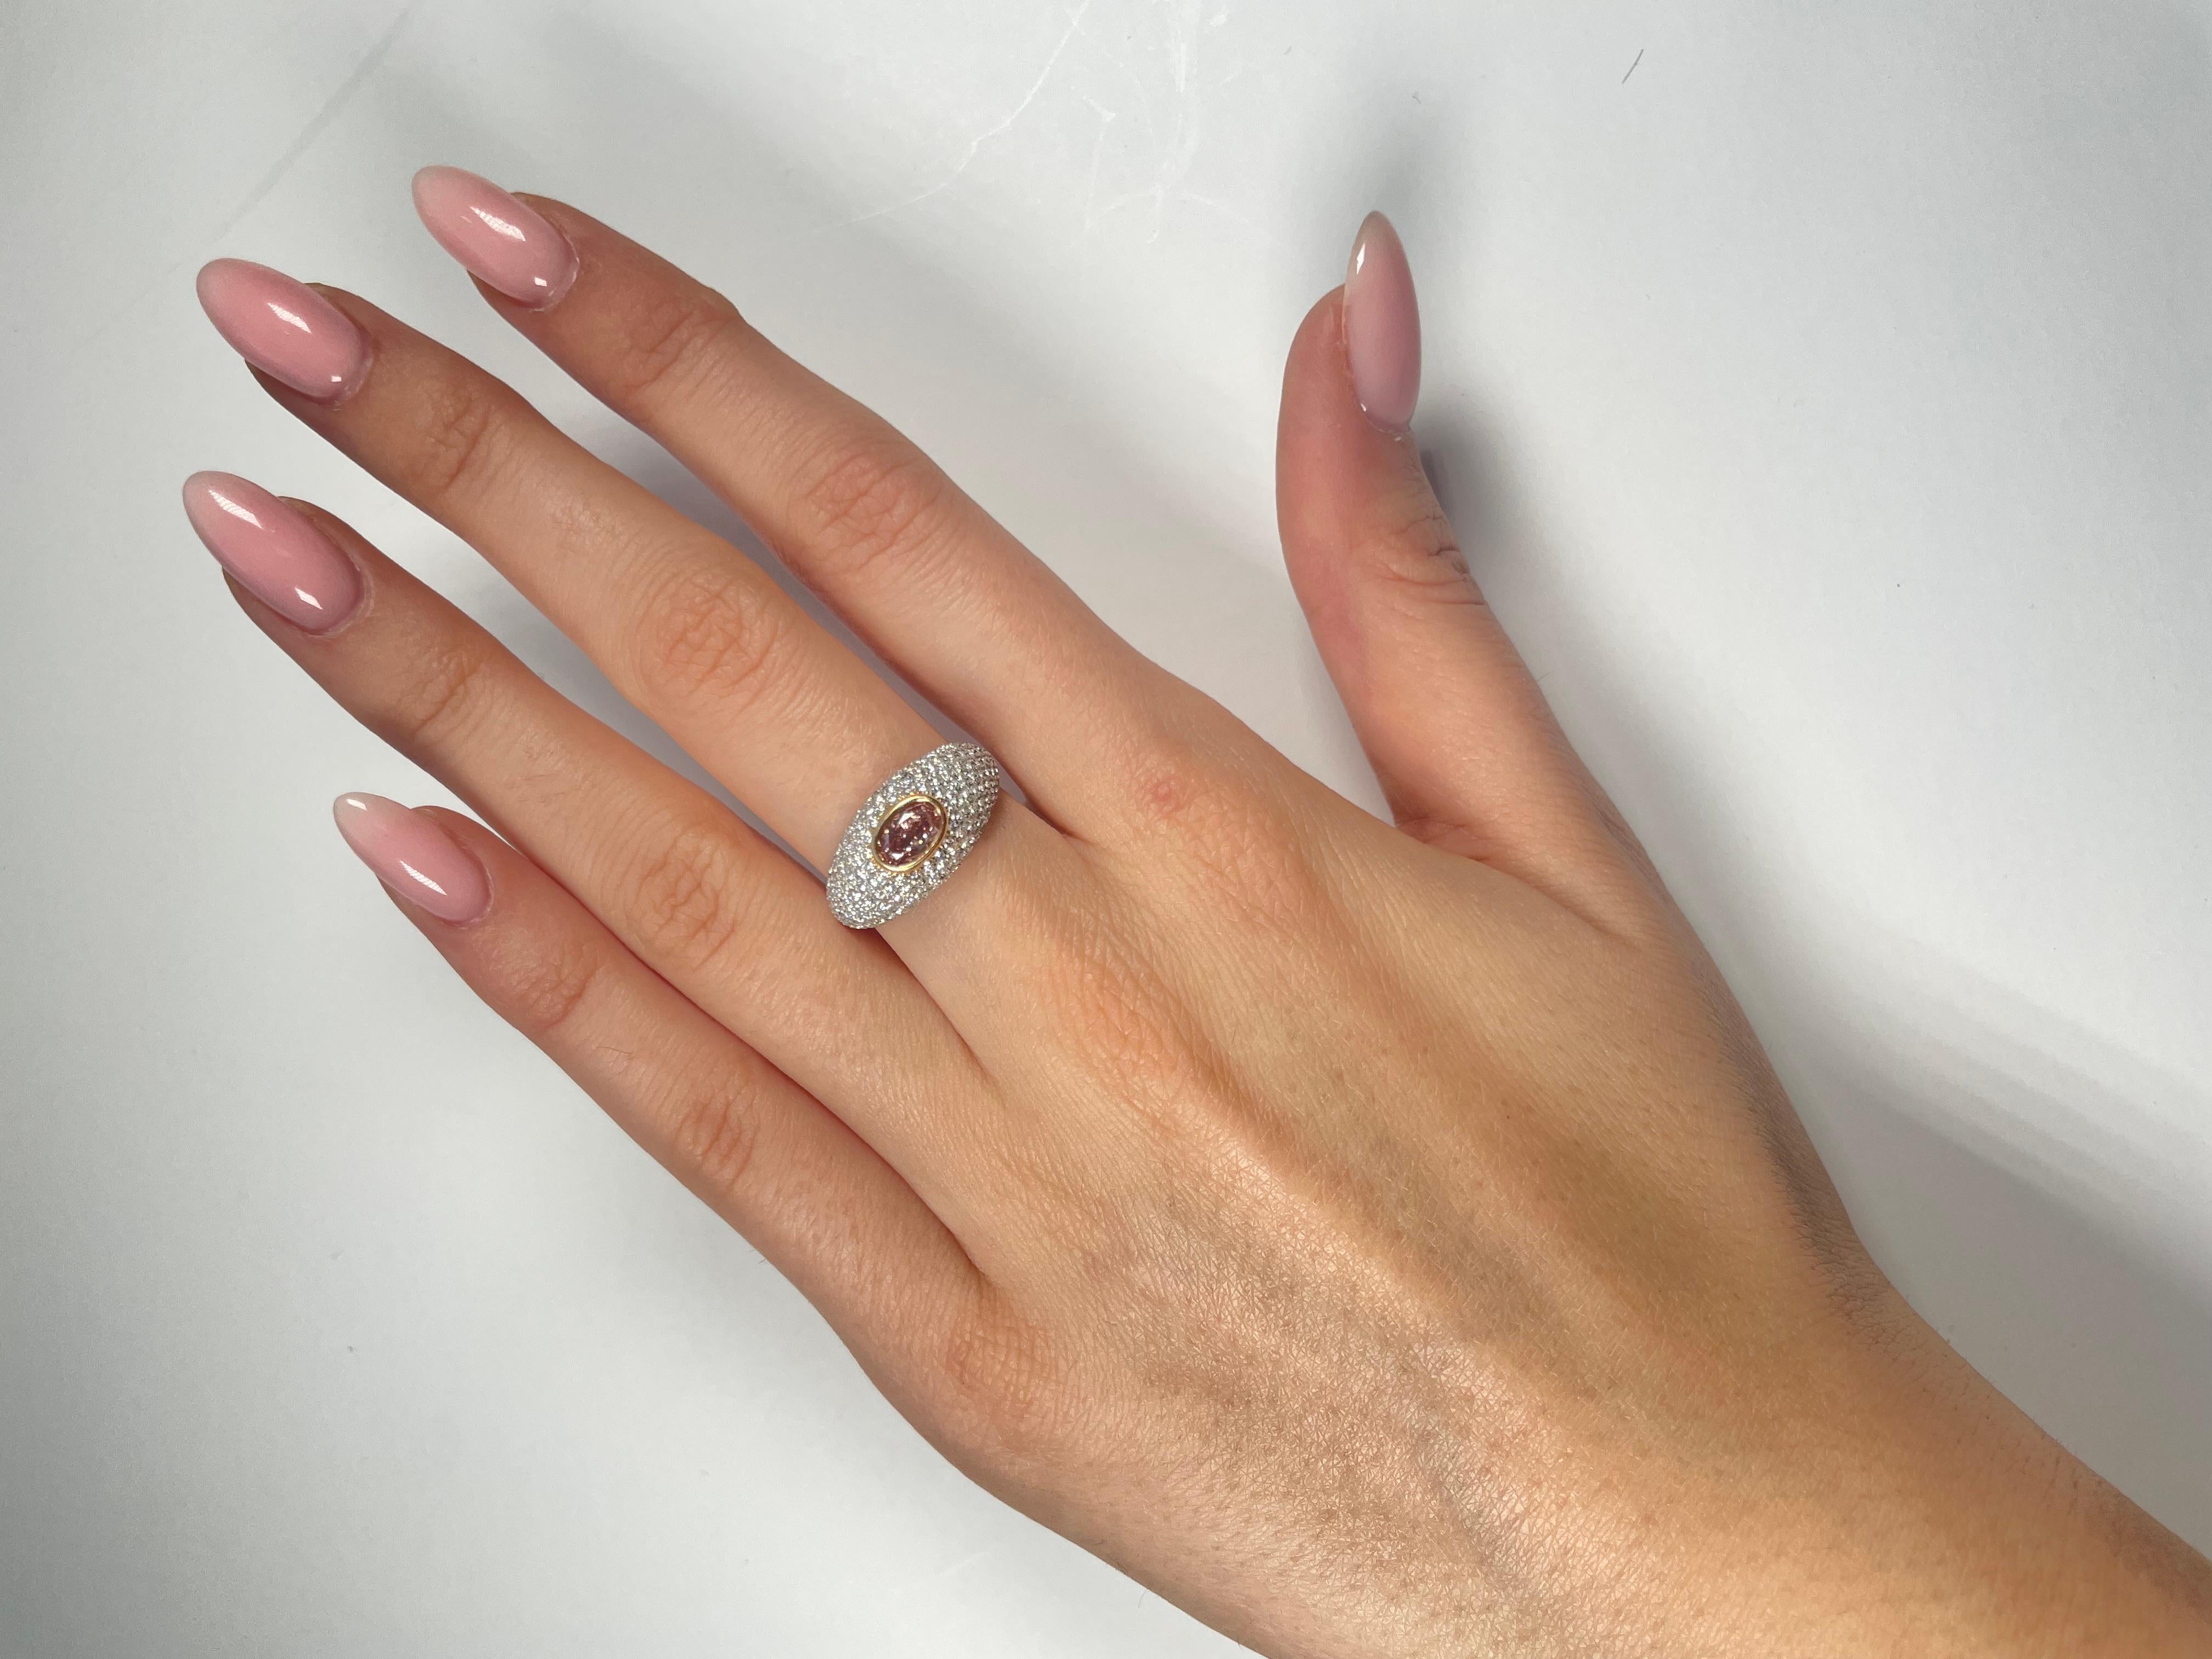 Ein einzigartiger Verlobungs- oder Cocktailring, GIA-zertifizierter 0,59 Karat Fancy Orangey Pink Oval Cut Diamant. Das klassische Design bringt die Schönheit des Mittelsteins mit den umliegenden 196 runden Diamanten F-G Farbe VS Klarheit, in einem